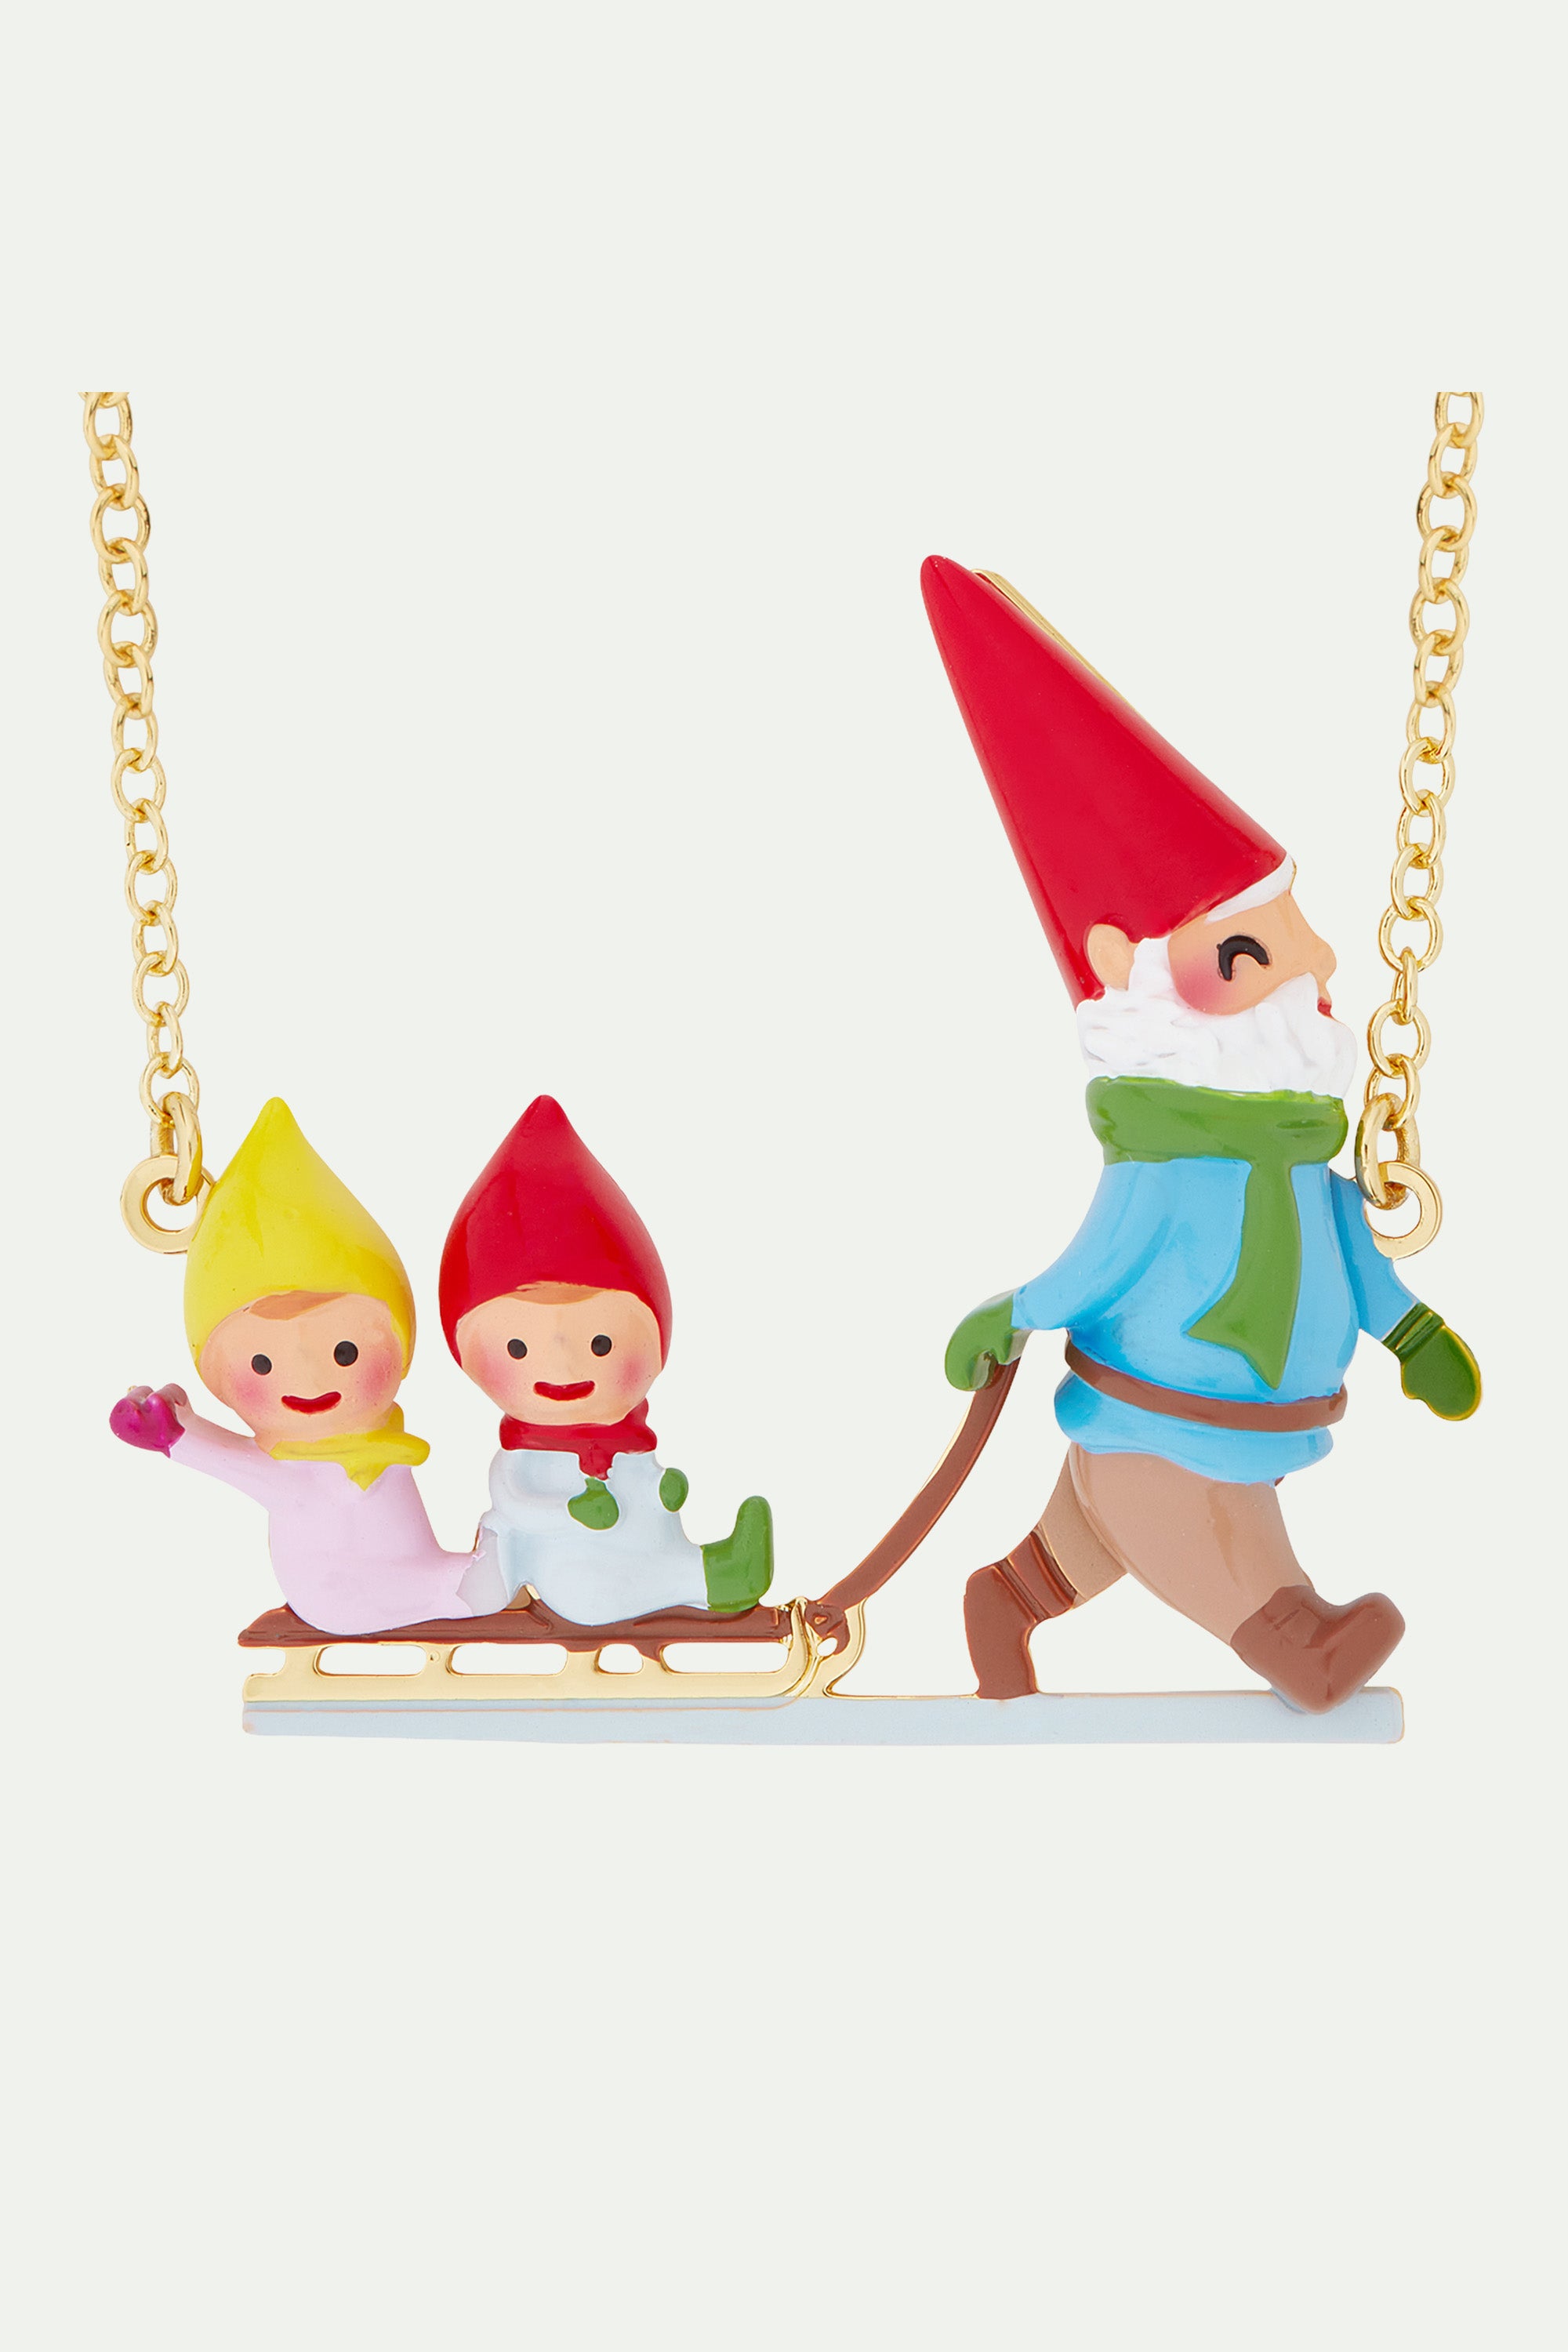 Sledging garden gnomes statement necklace